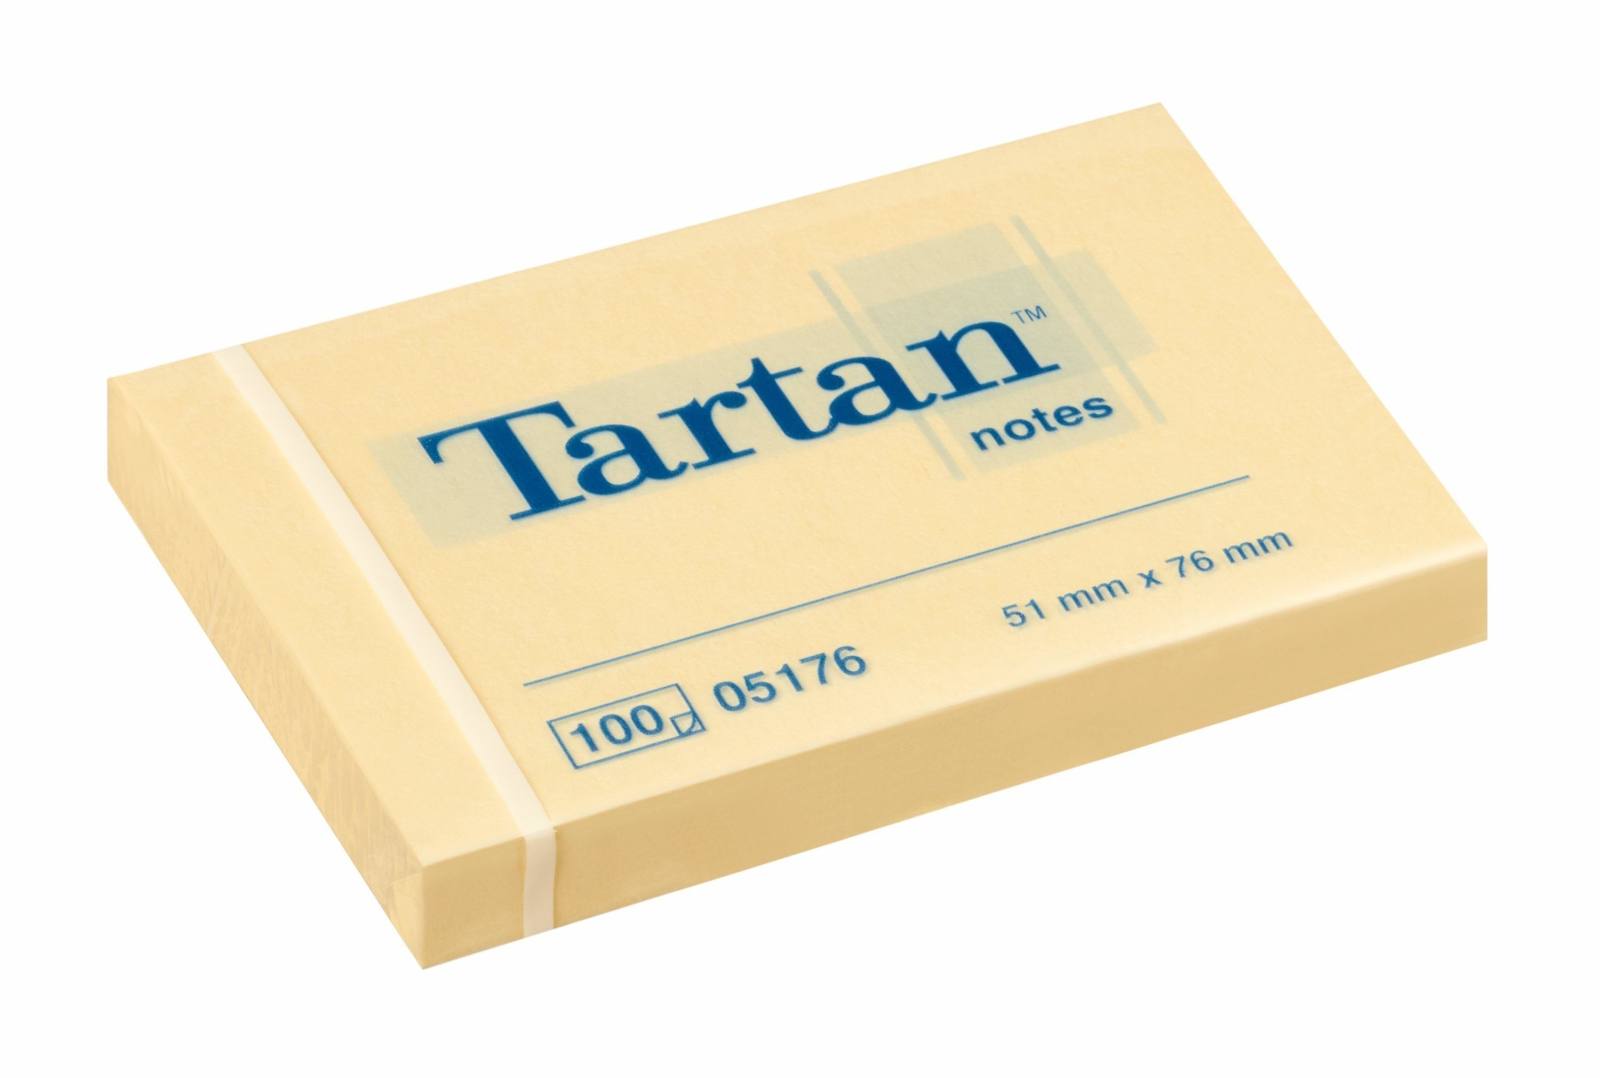 3M Tartan Notes 005176, 51 x 76 mm, amarillo, 1 bloc de 100 hojas